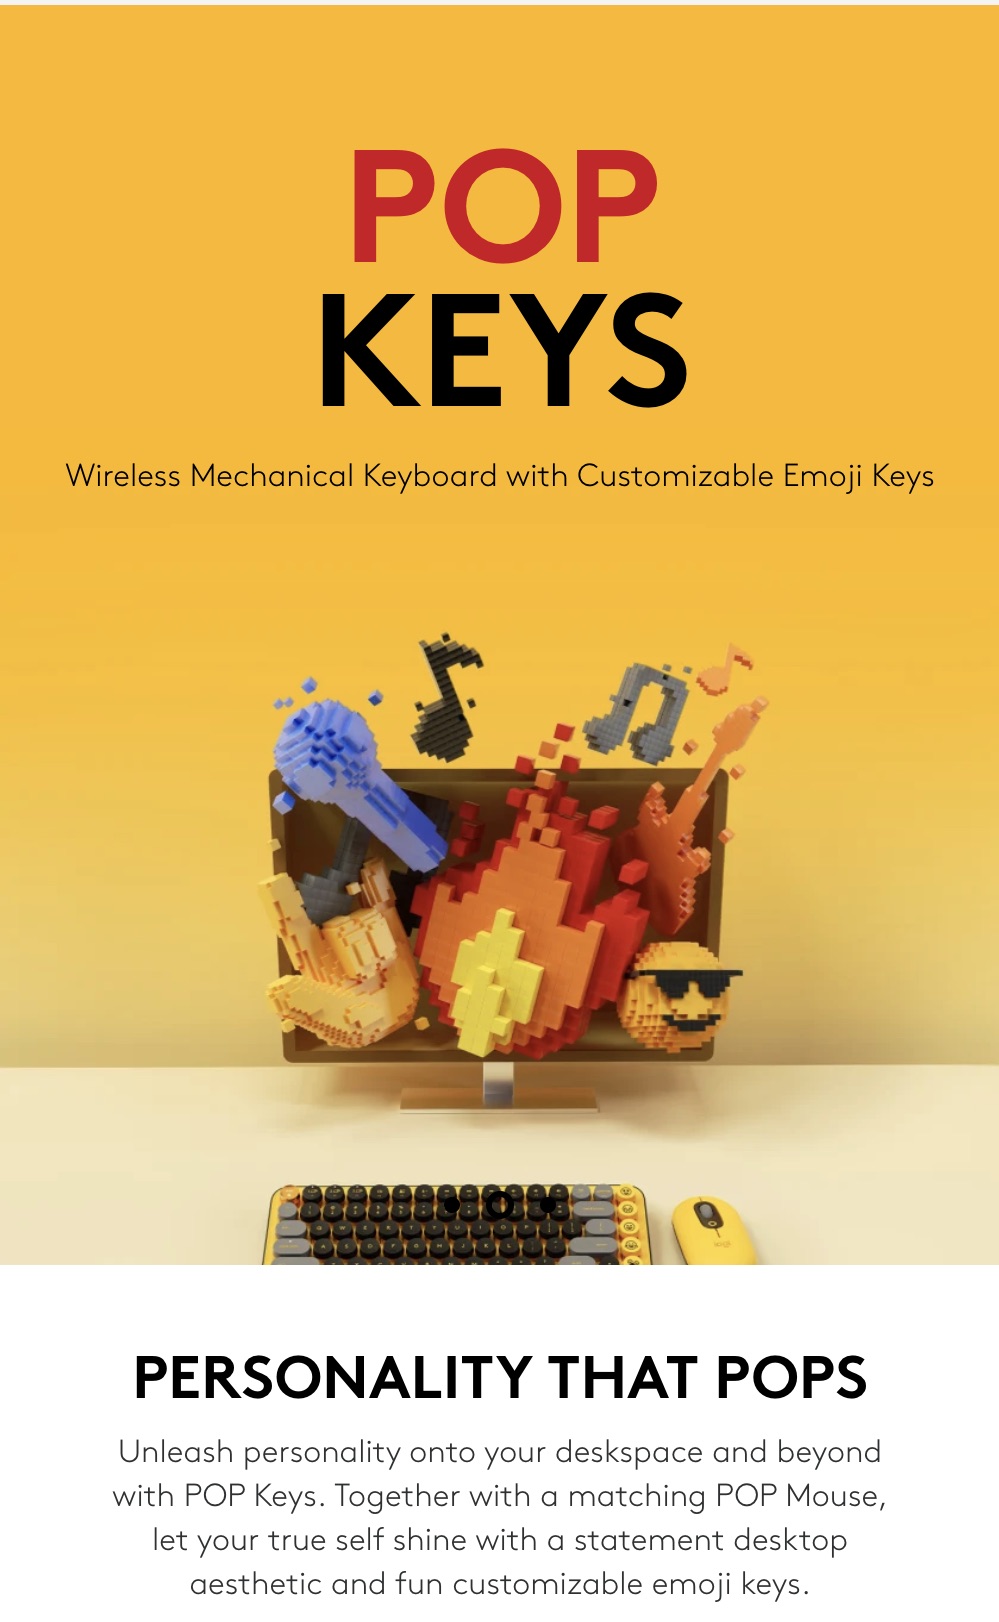 Logitech-Pop-Keys-Wireless-Mechanical-Keyboard-Description-1